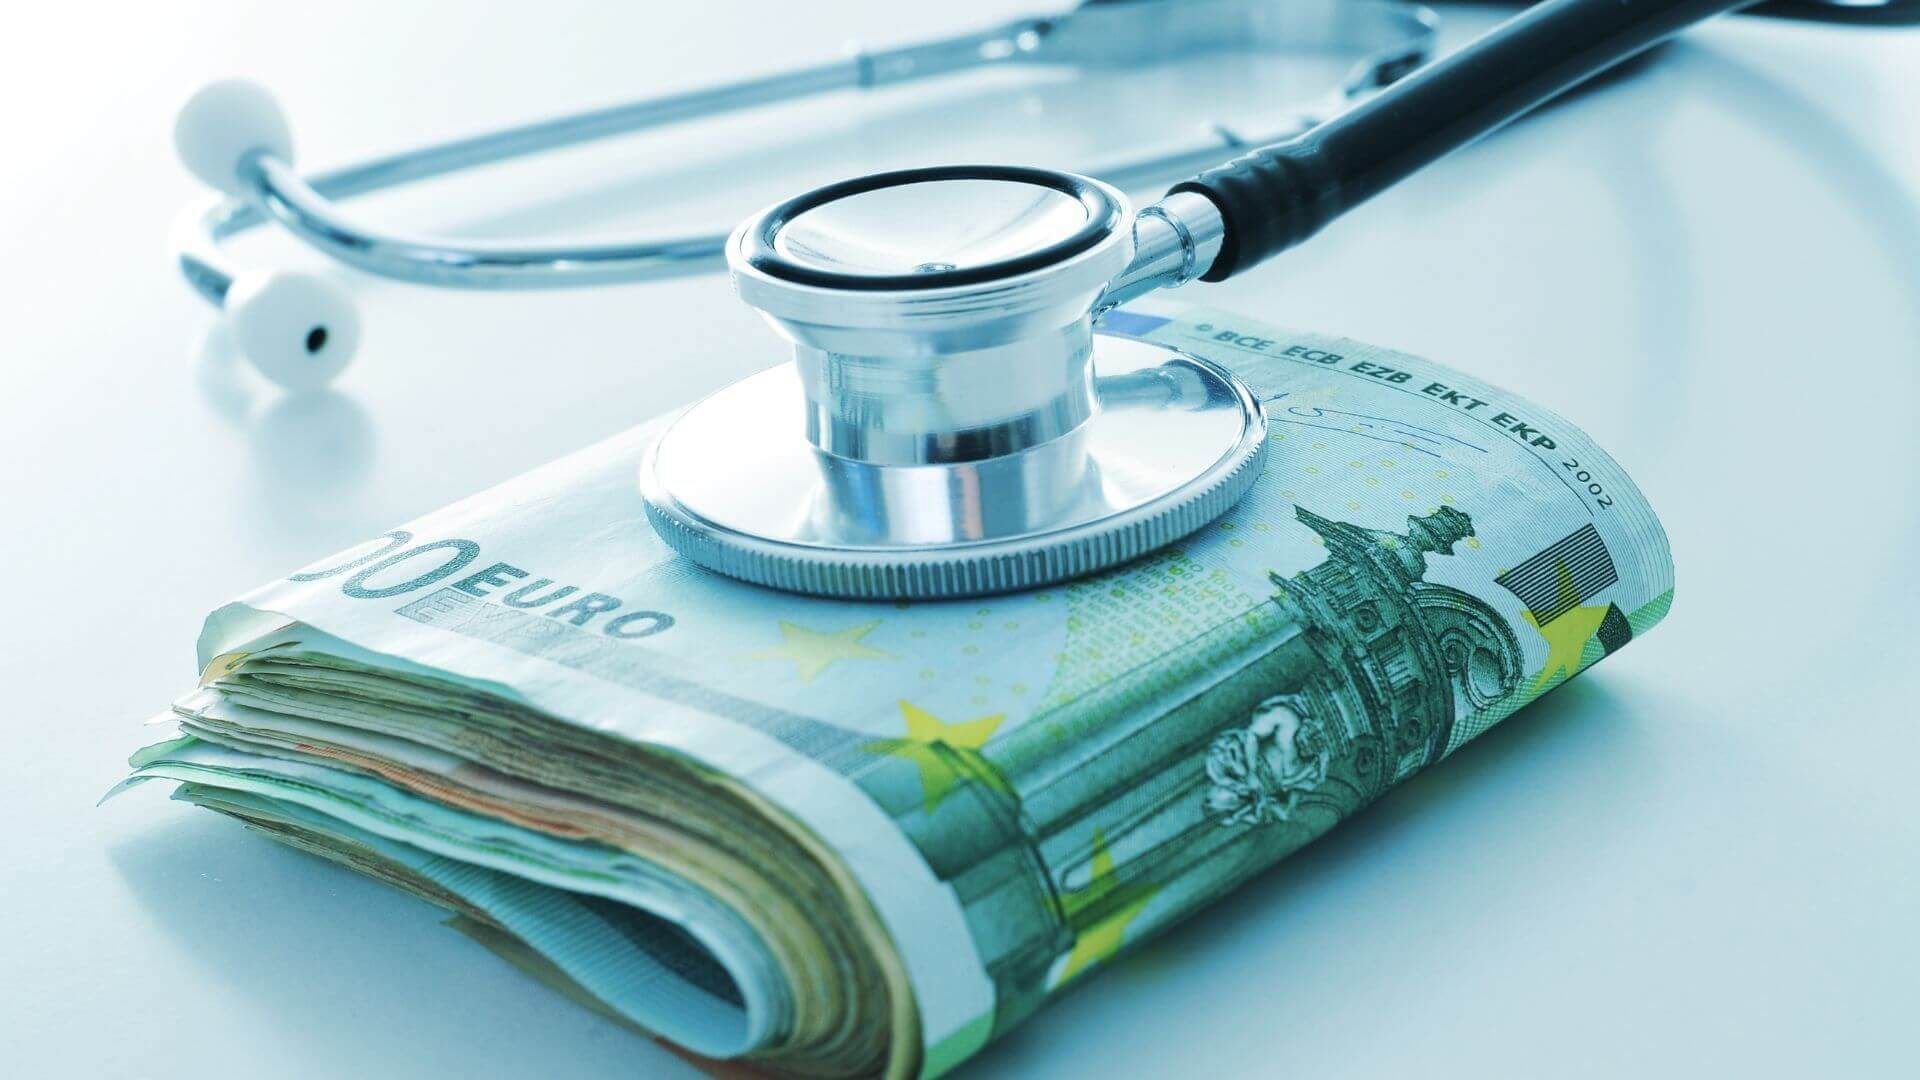 Arzt-Gehalt liegt in Bargeldscheinen auf einem Tisch mit einem Stethoskop darauf.